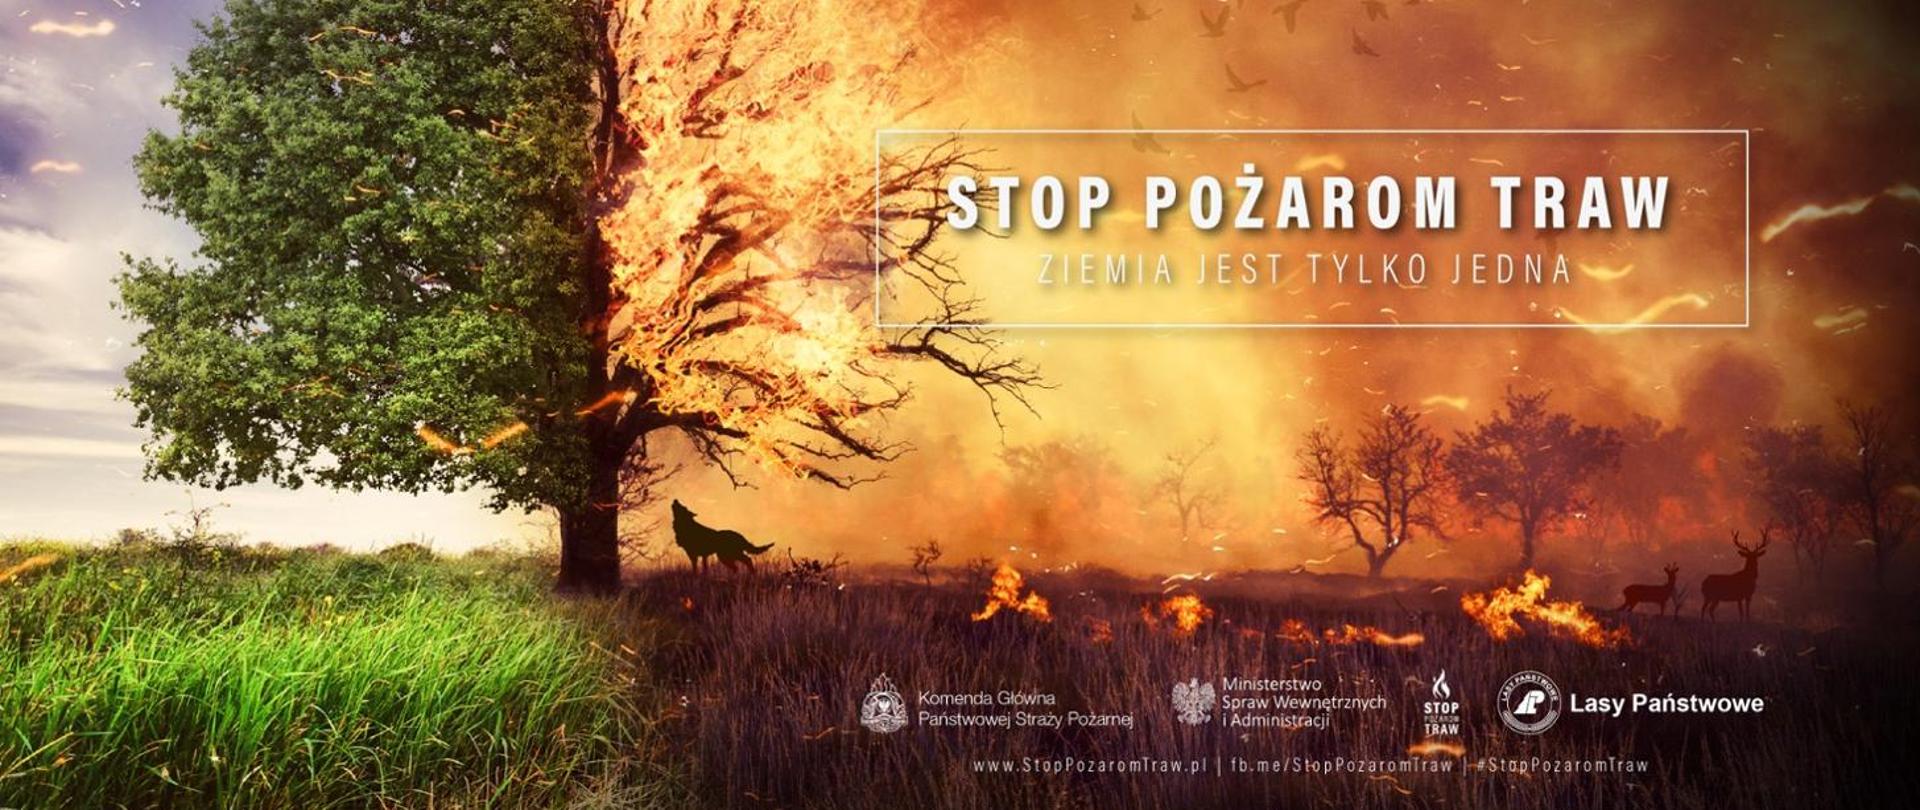 Stop pożarom traw - ziemia jest tylko jedna - logo kampanii z płonącym drzewem, trawami i zwierzętami